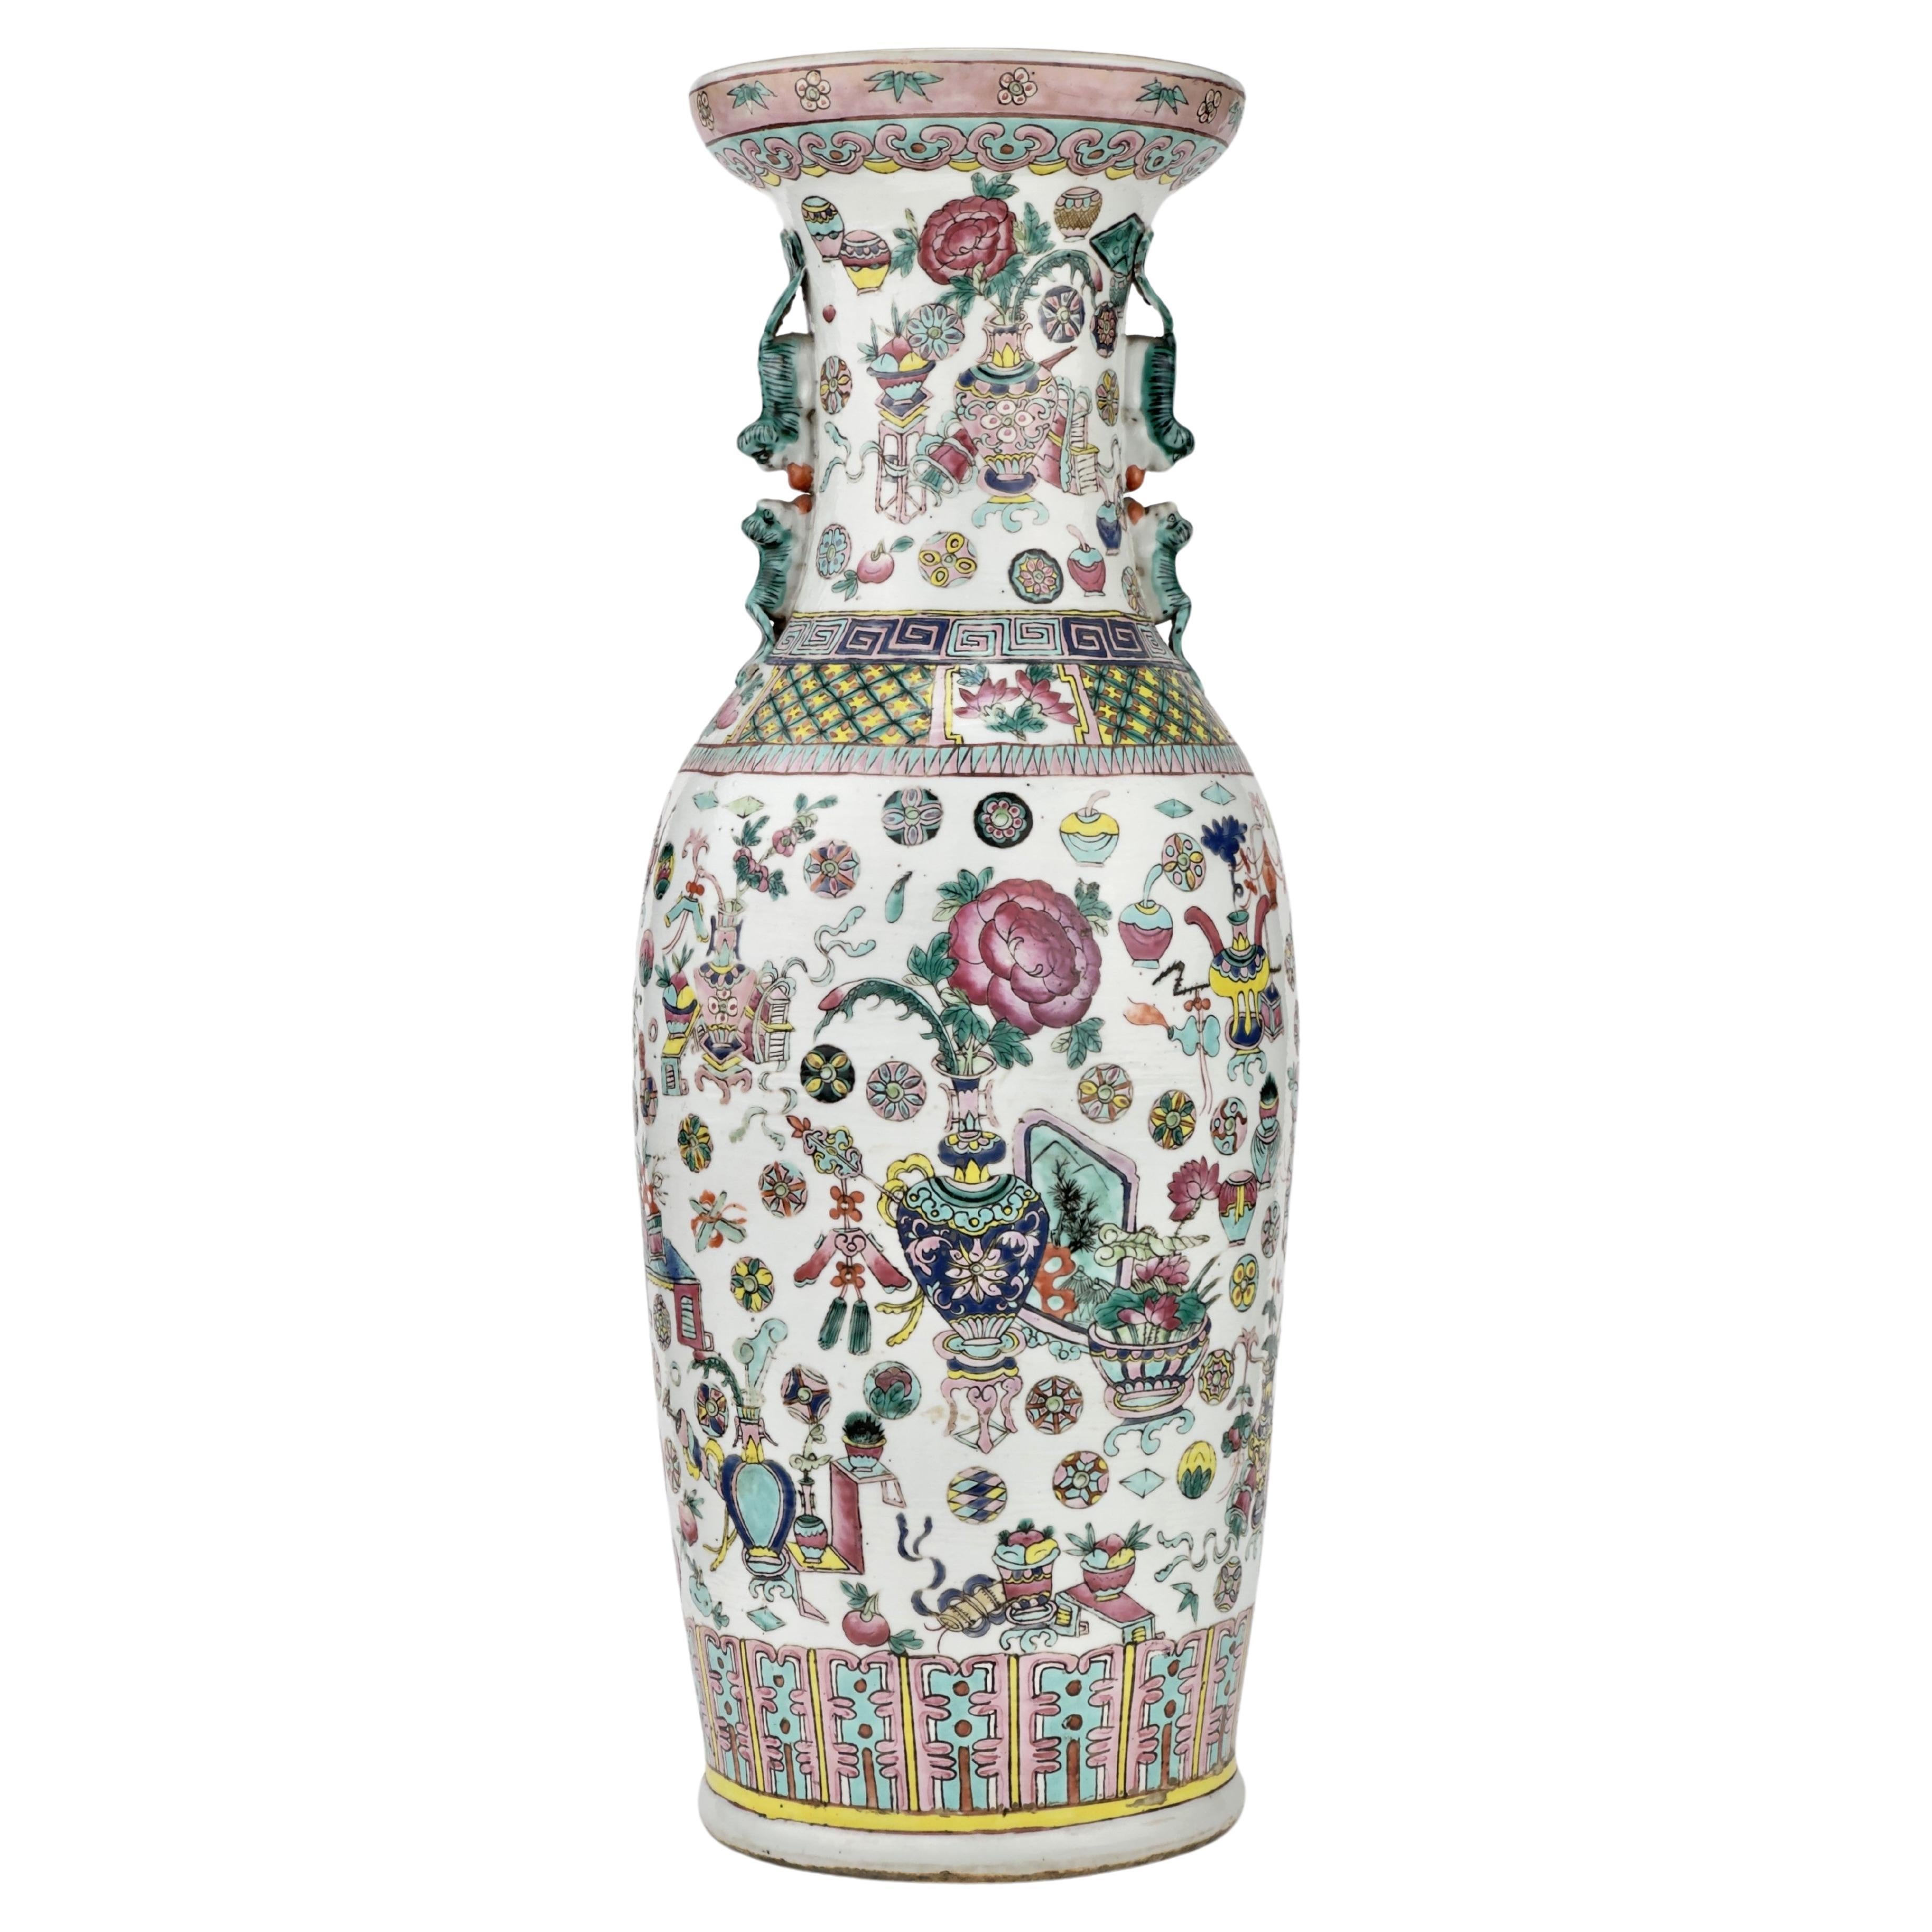 Grand vase chinois émaillé Famille Rose, période Qing, 19e siècle